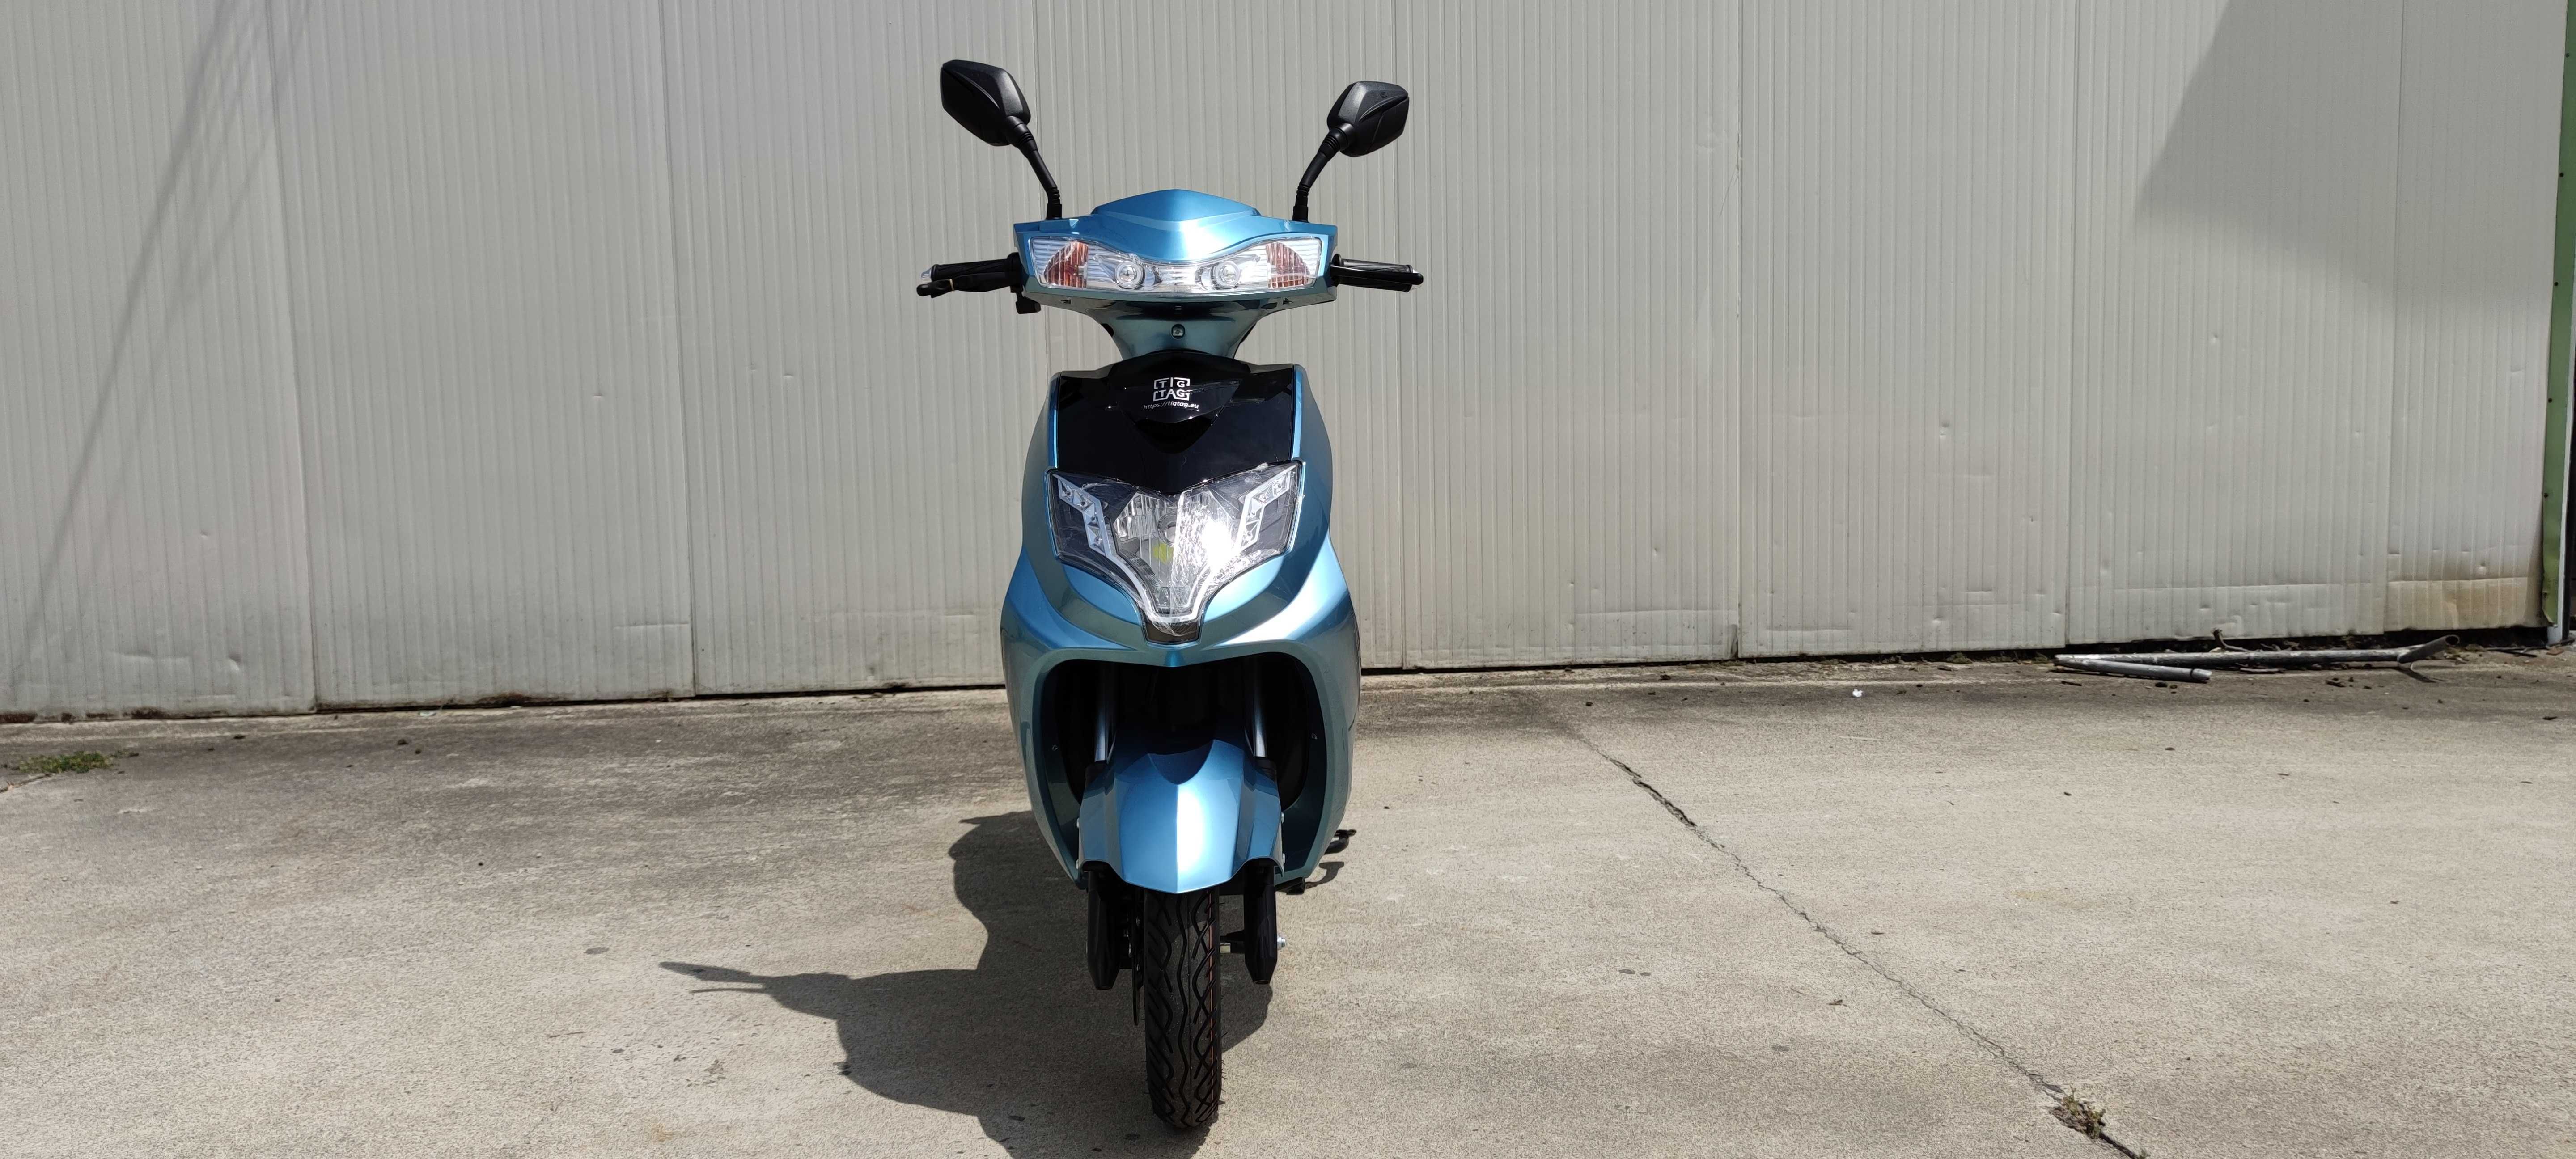 Електрически скутер модел ЕМ006 My Force  син цвят с регистрация